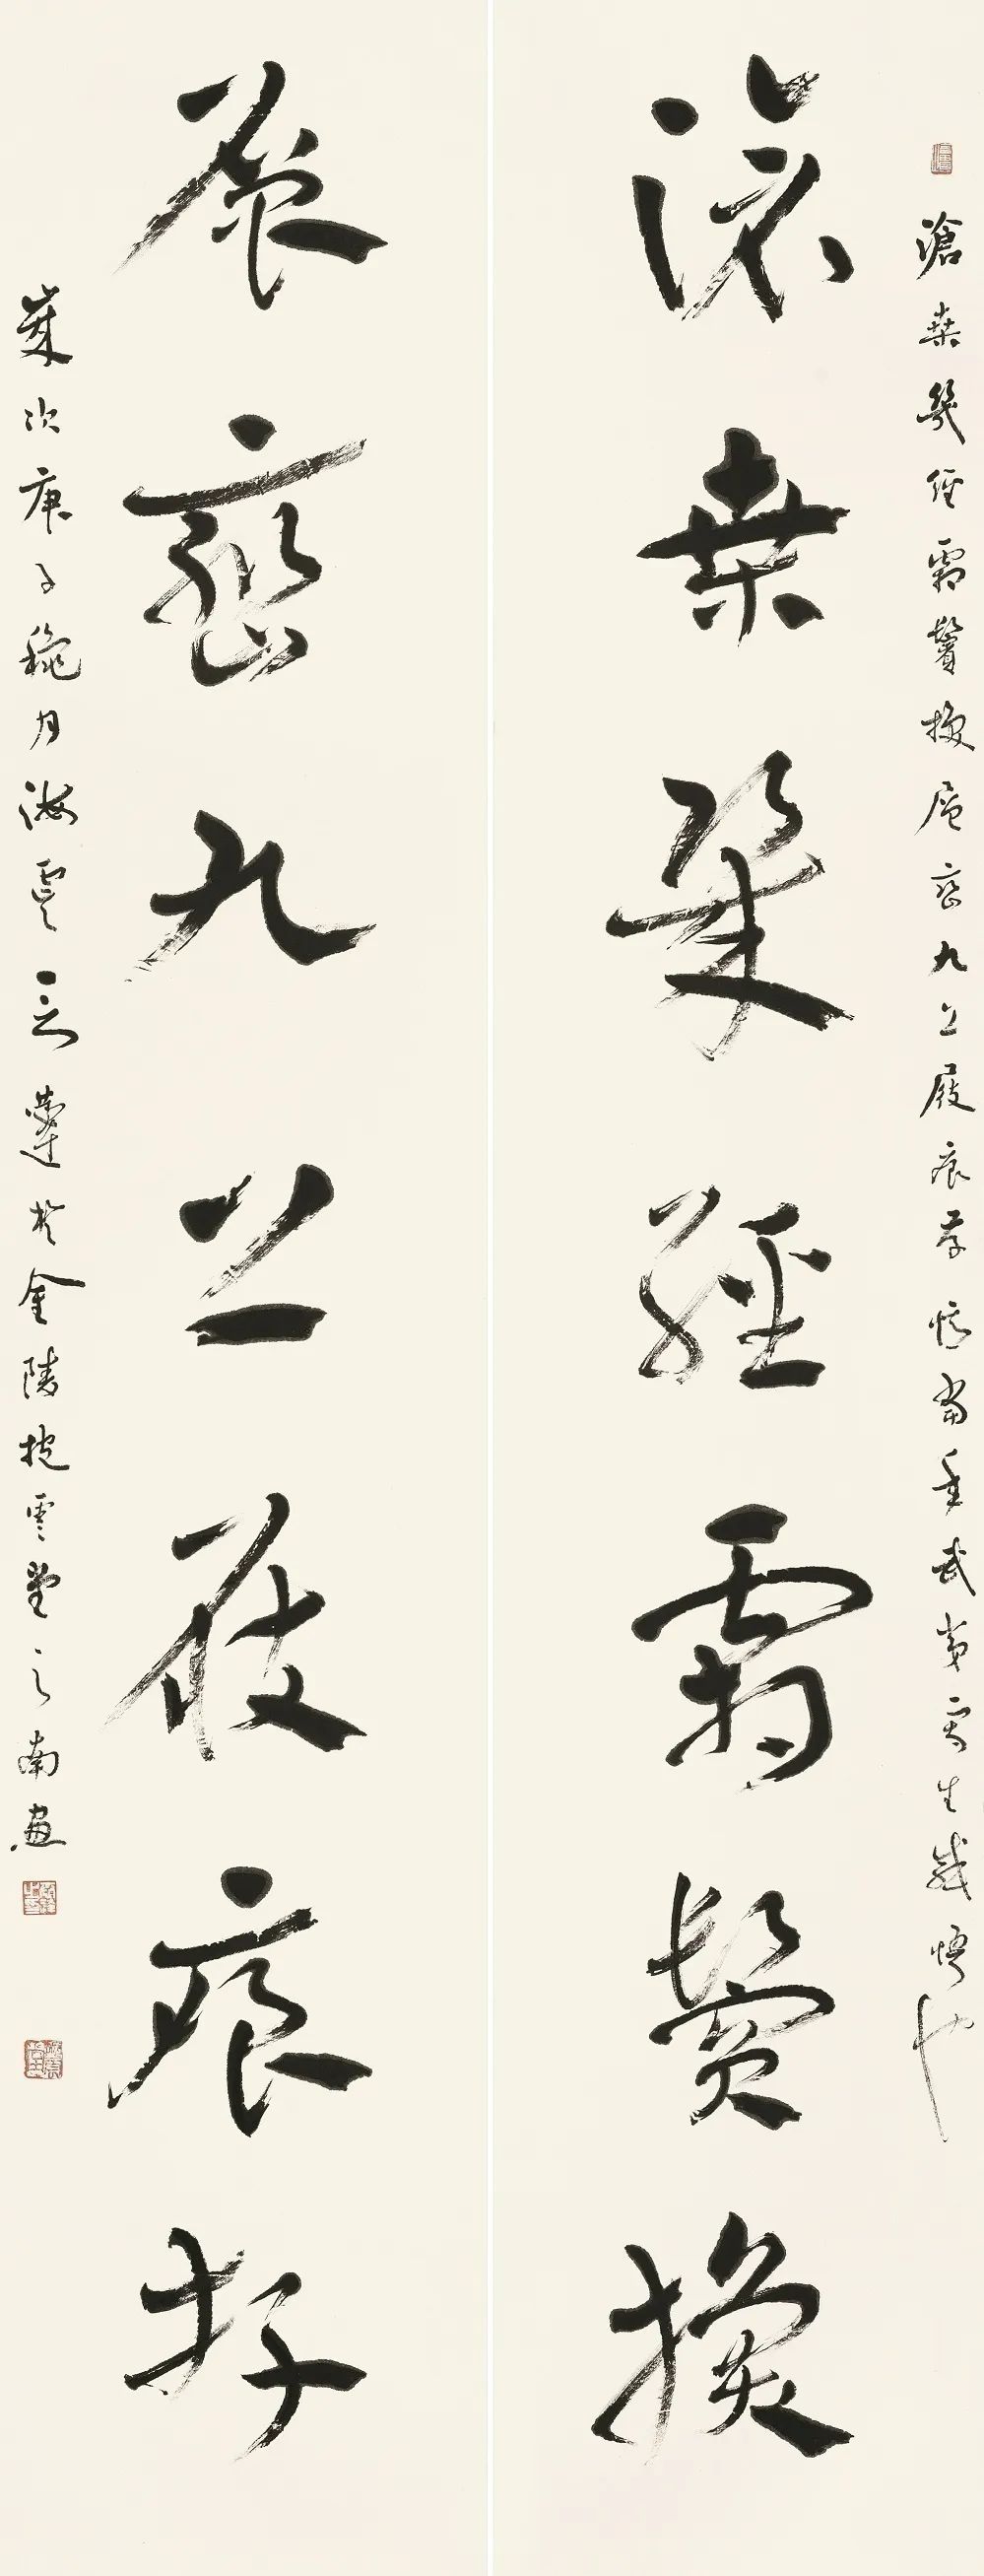 言恭达书法的当代价值和意义——兼论中国书法创新的独特性